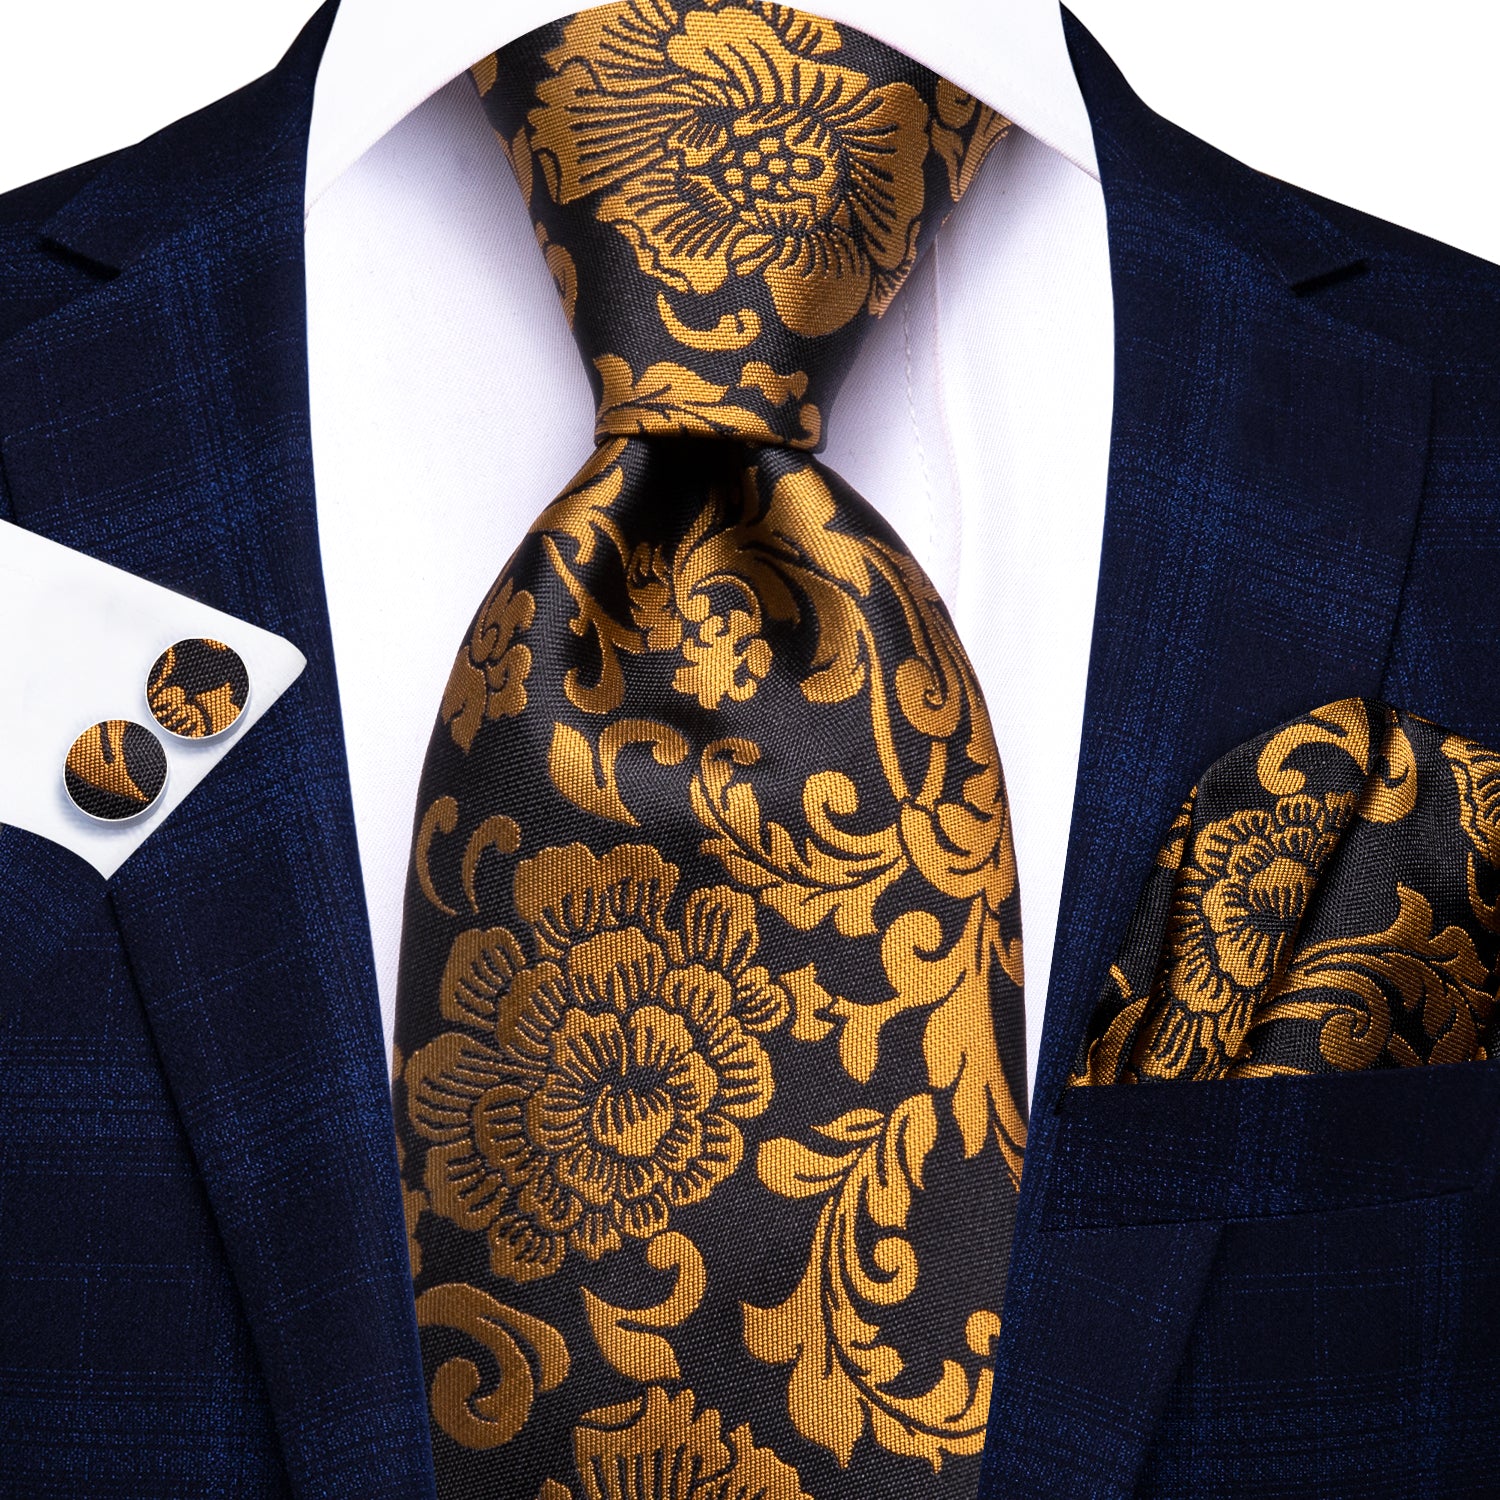 Hi-Tie Black Golden Floral Men's Tie Pocket Square Cufflinks Set